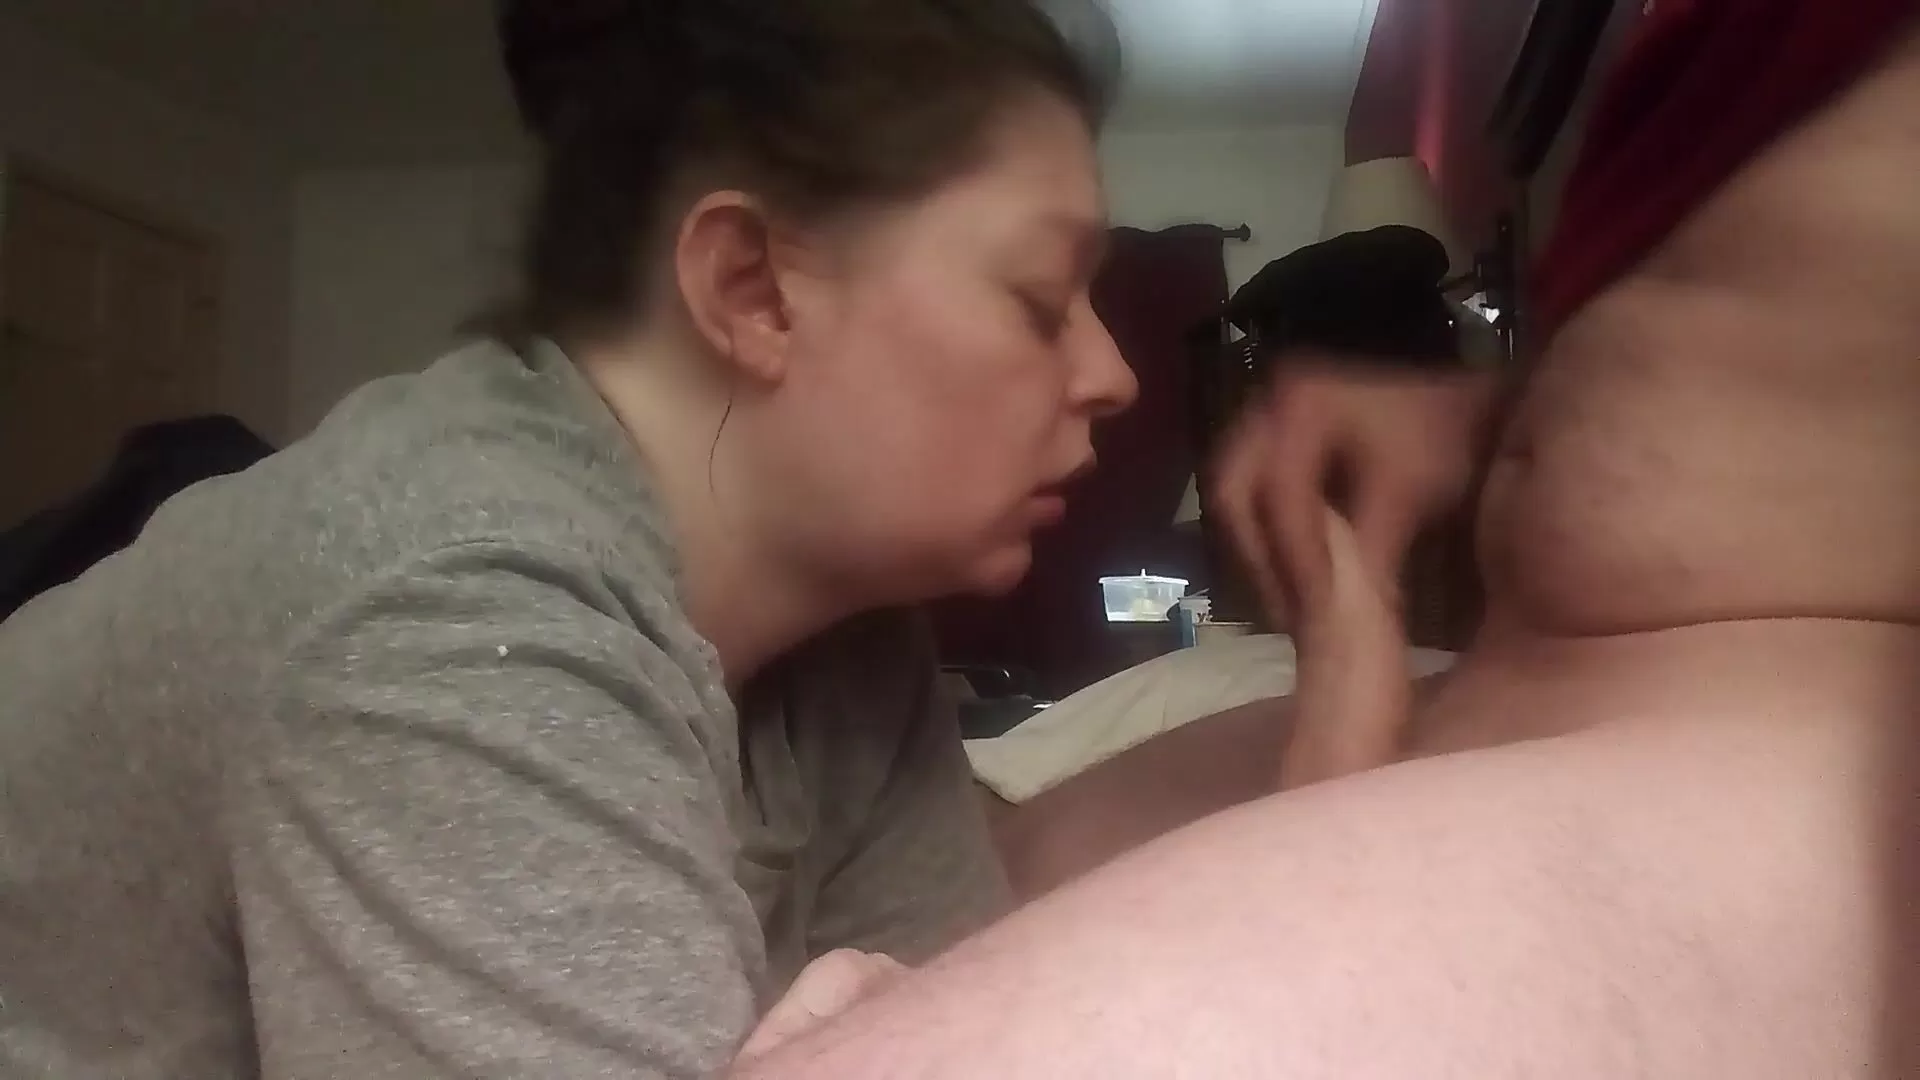 Жена глотает у мужа сперму - смотреть русское порно видео бесплатно